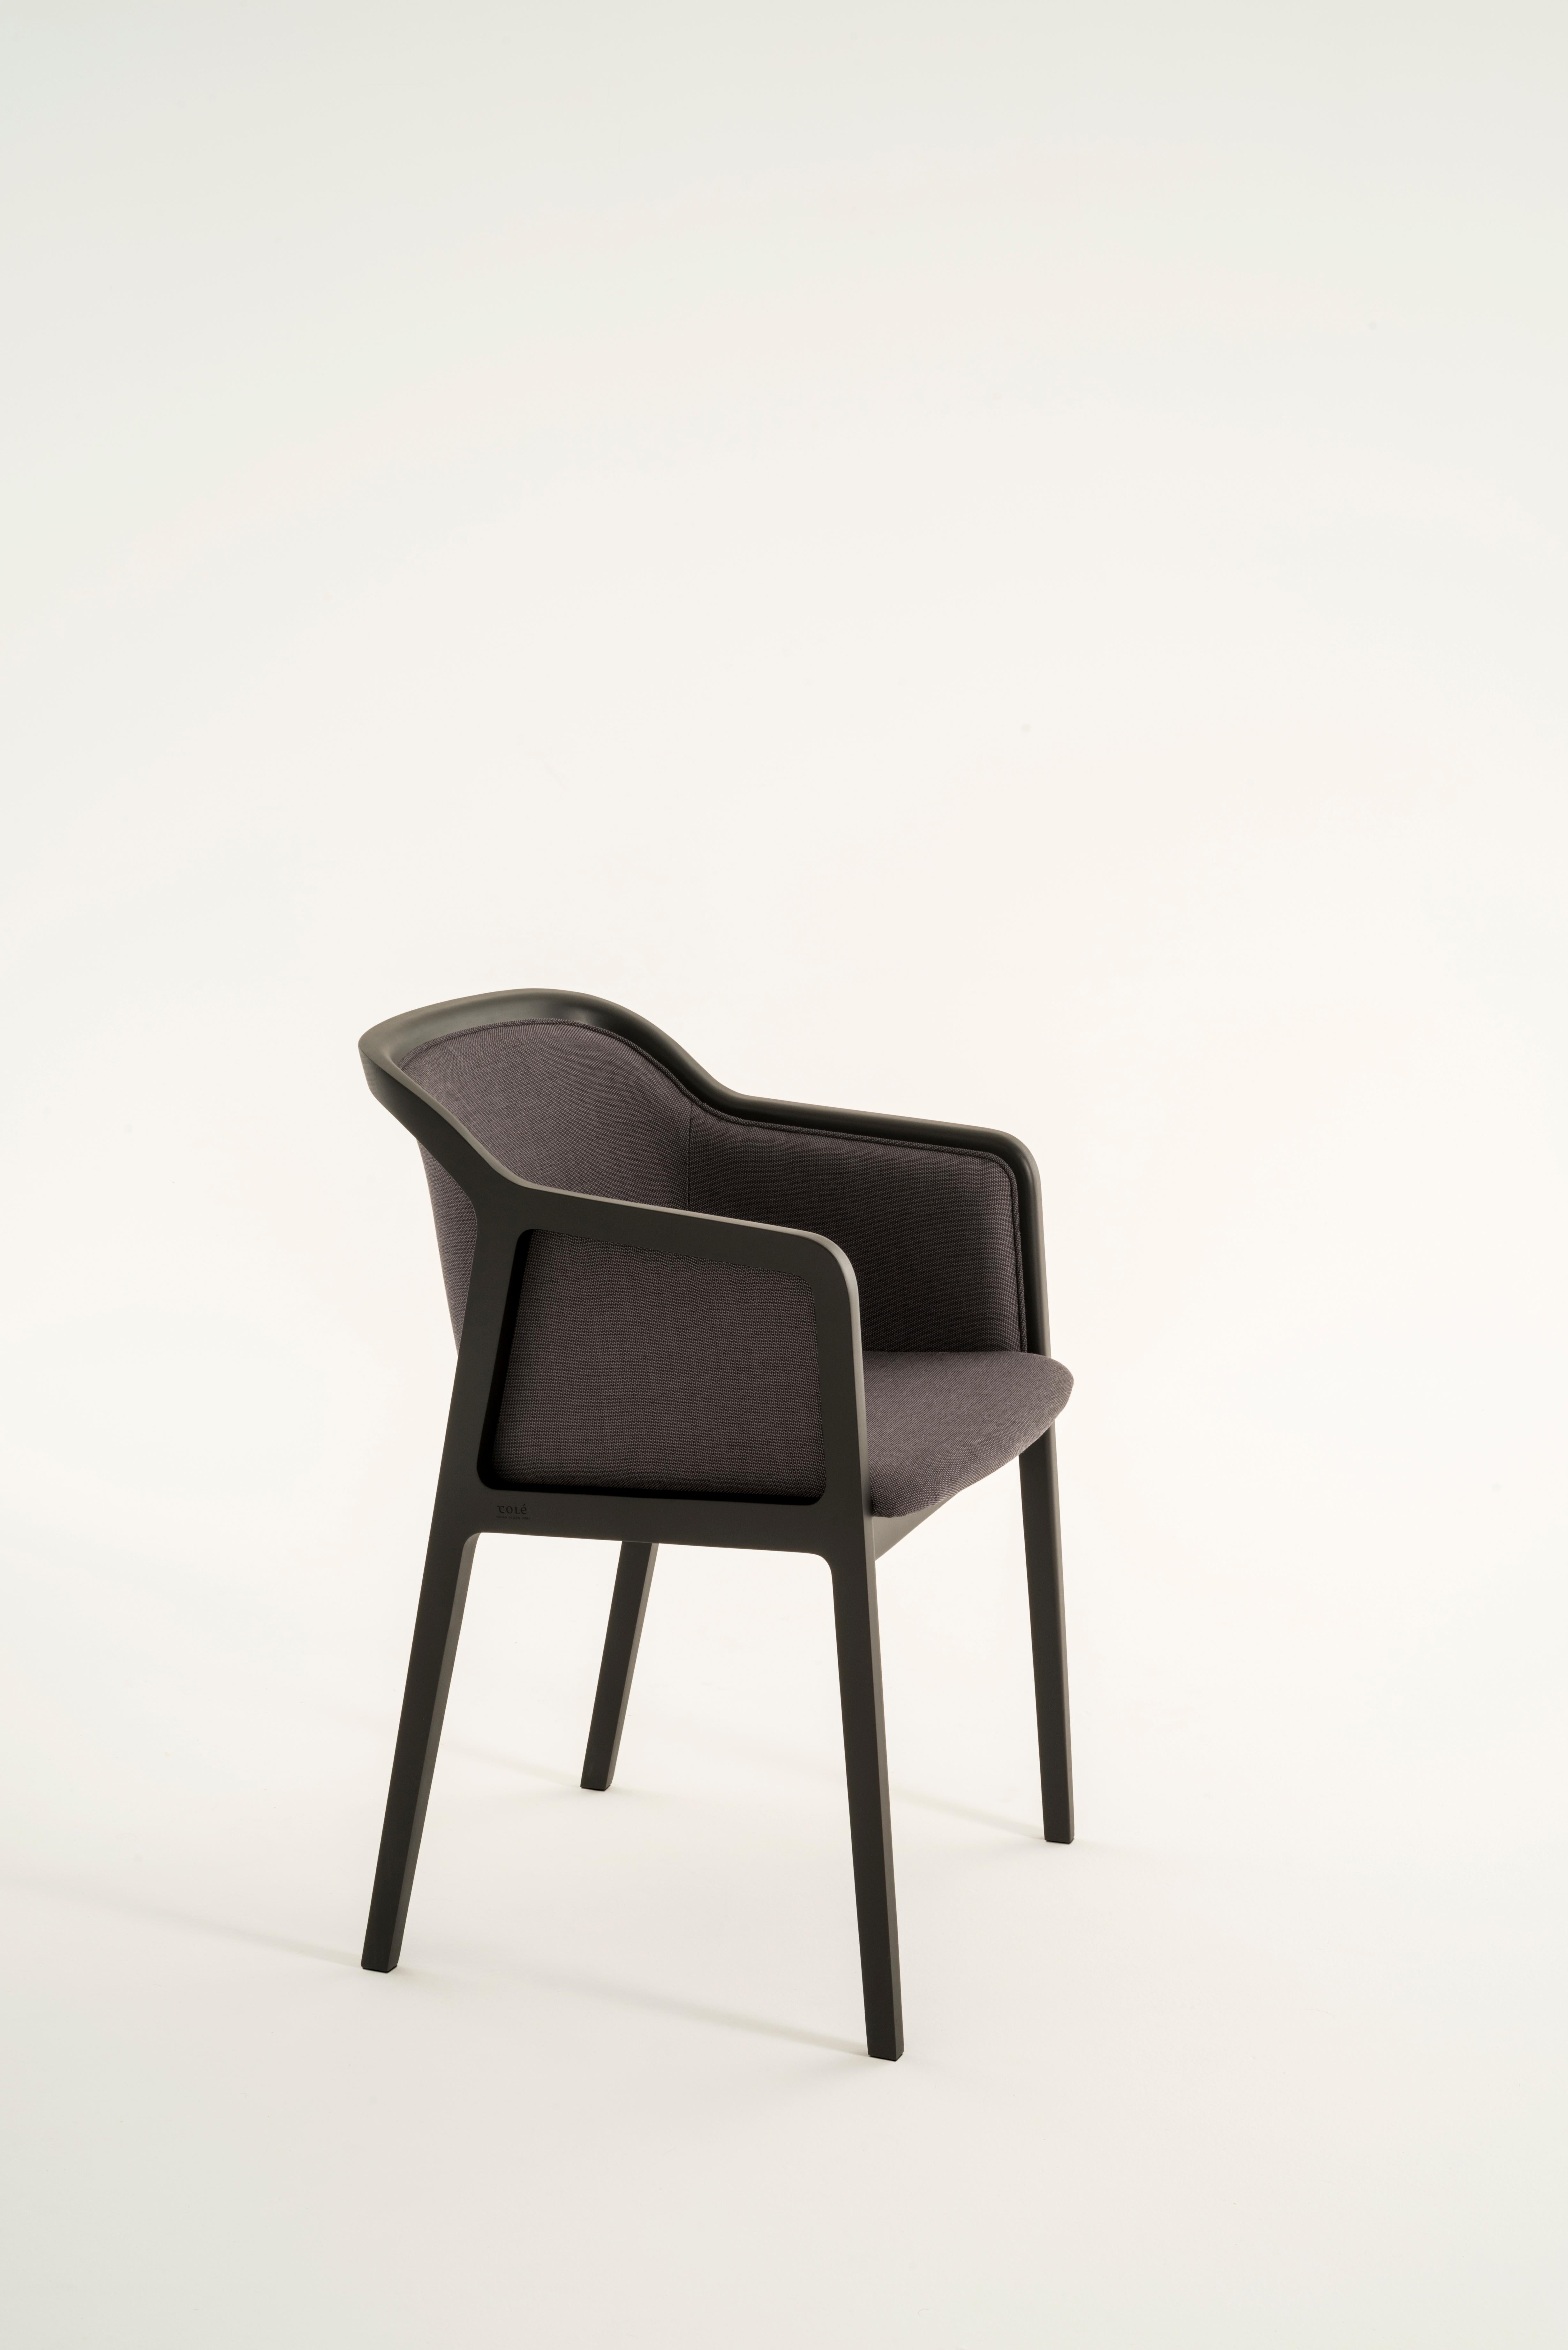 italien Petit fauteuil souple viennois, design contemporain inspiré des chaises traditionnelles en vente